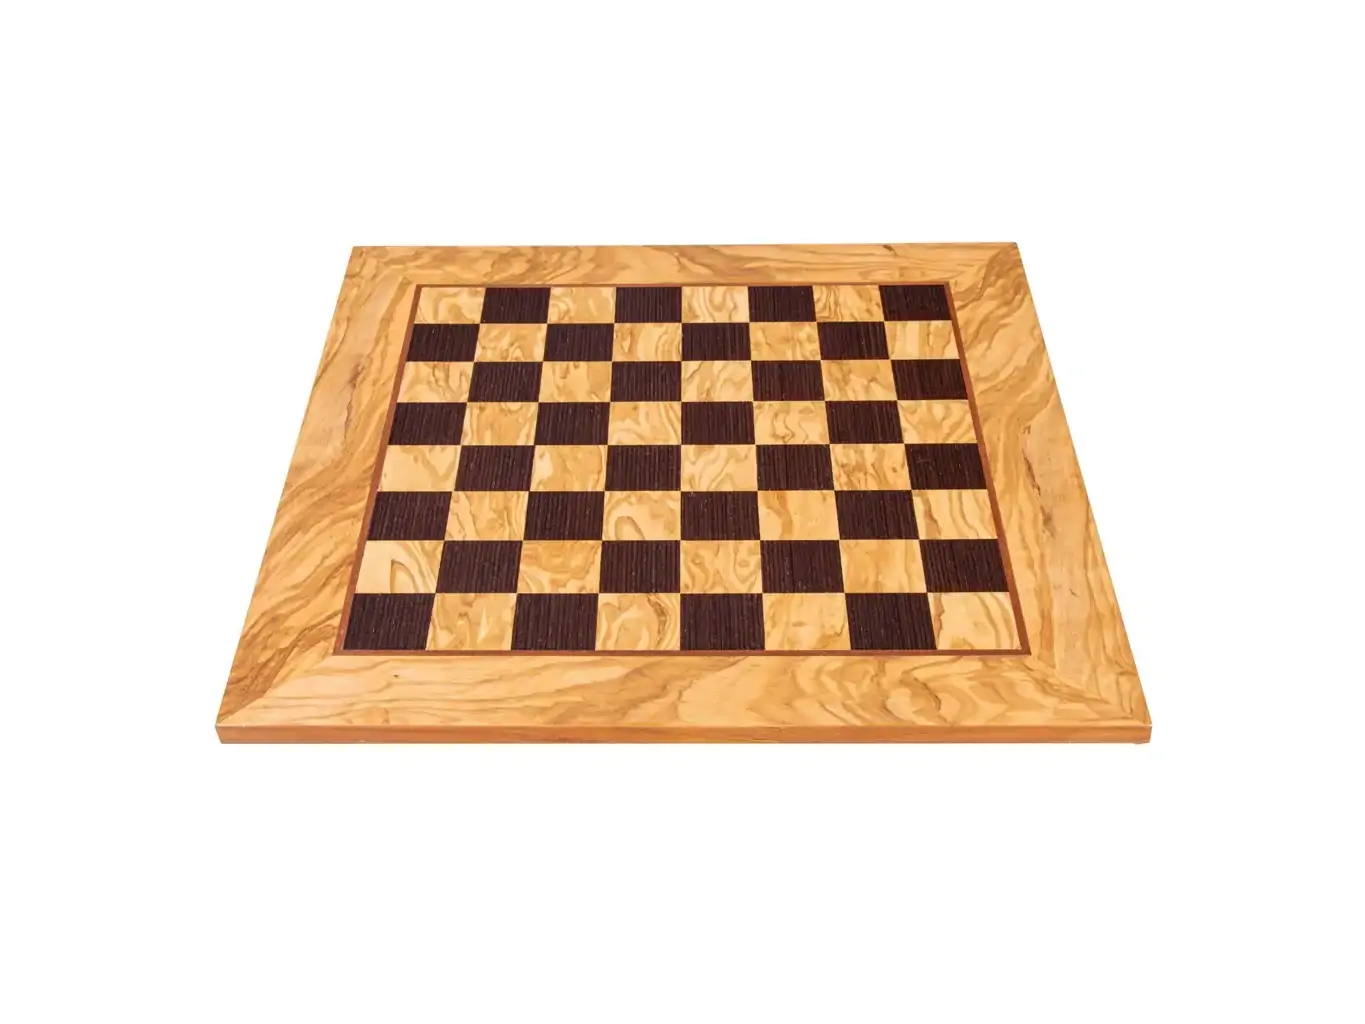 Ξύλινη σκακιέρα ελιά και wenge 40x40 | Χειροποίητη ξύλινη σκακιέρα